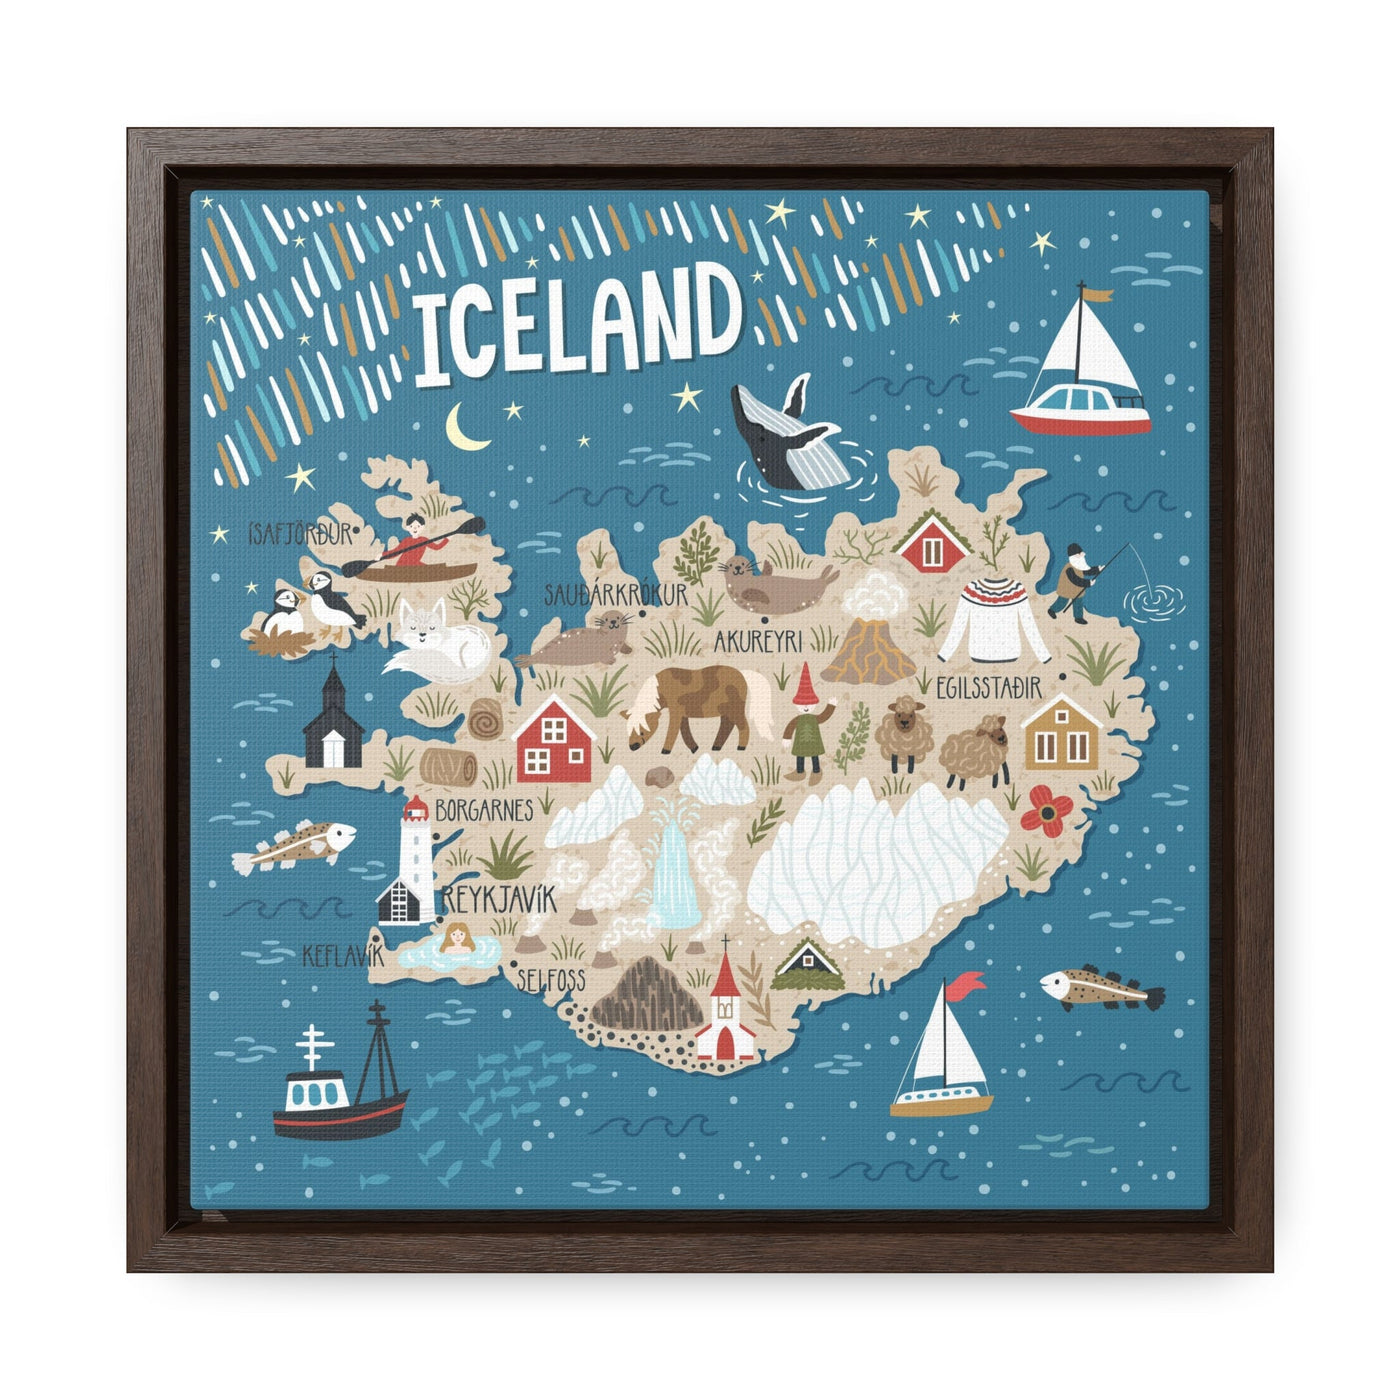 Iceland Stylized Map Framed Canvas - Ezra's Clothing